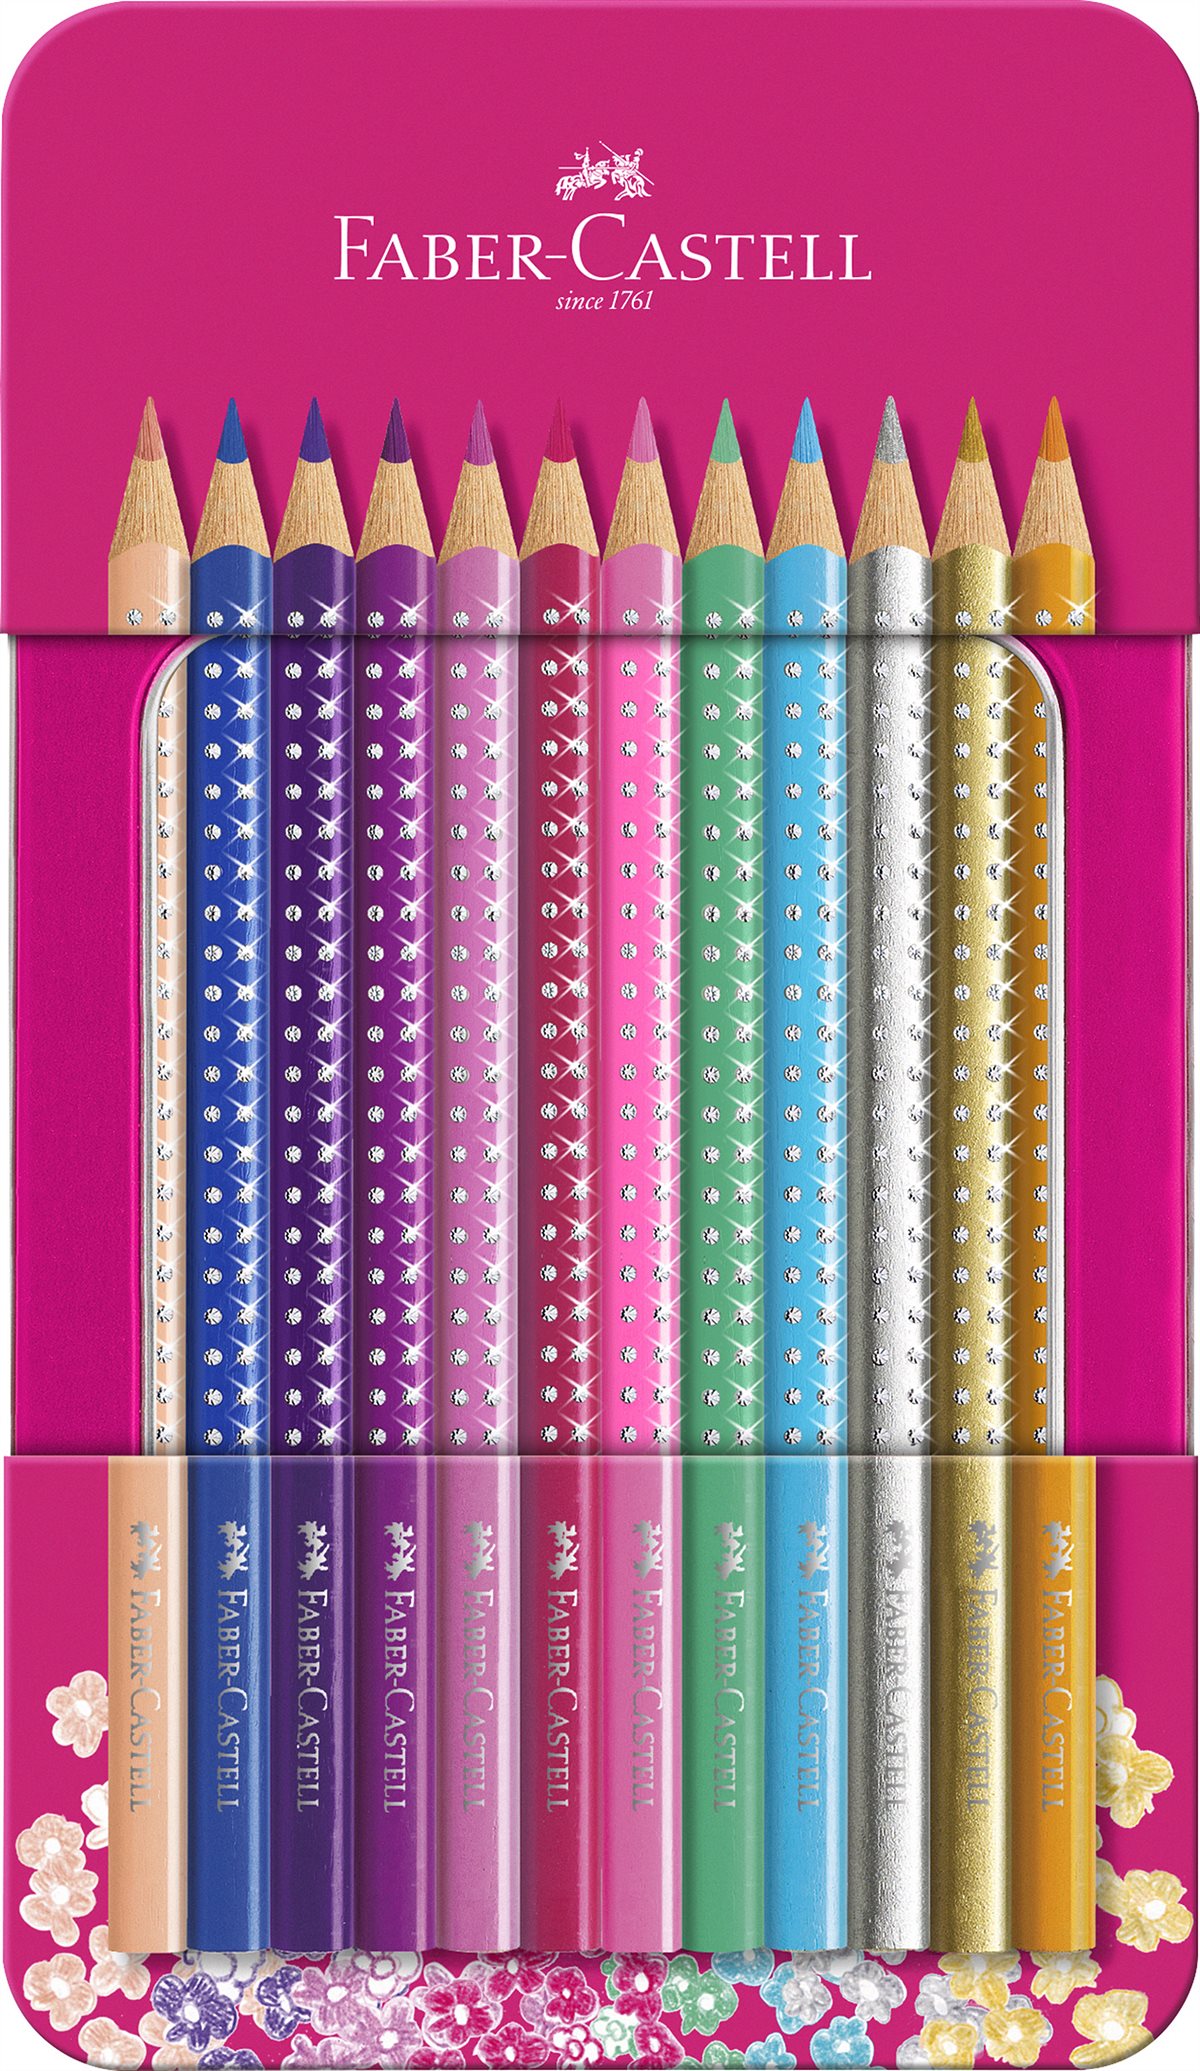 Faber-Castell_Sparkle Box Pink mit 12 Stiften_10 EUR